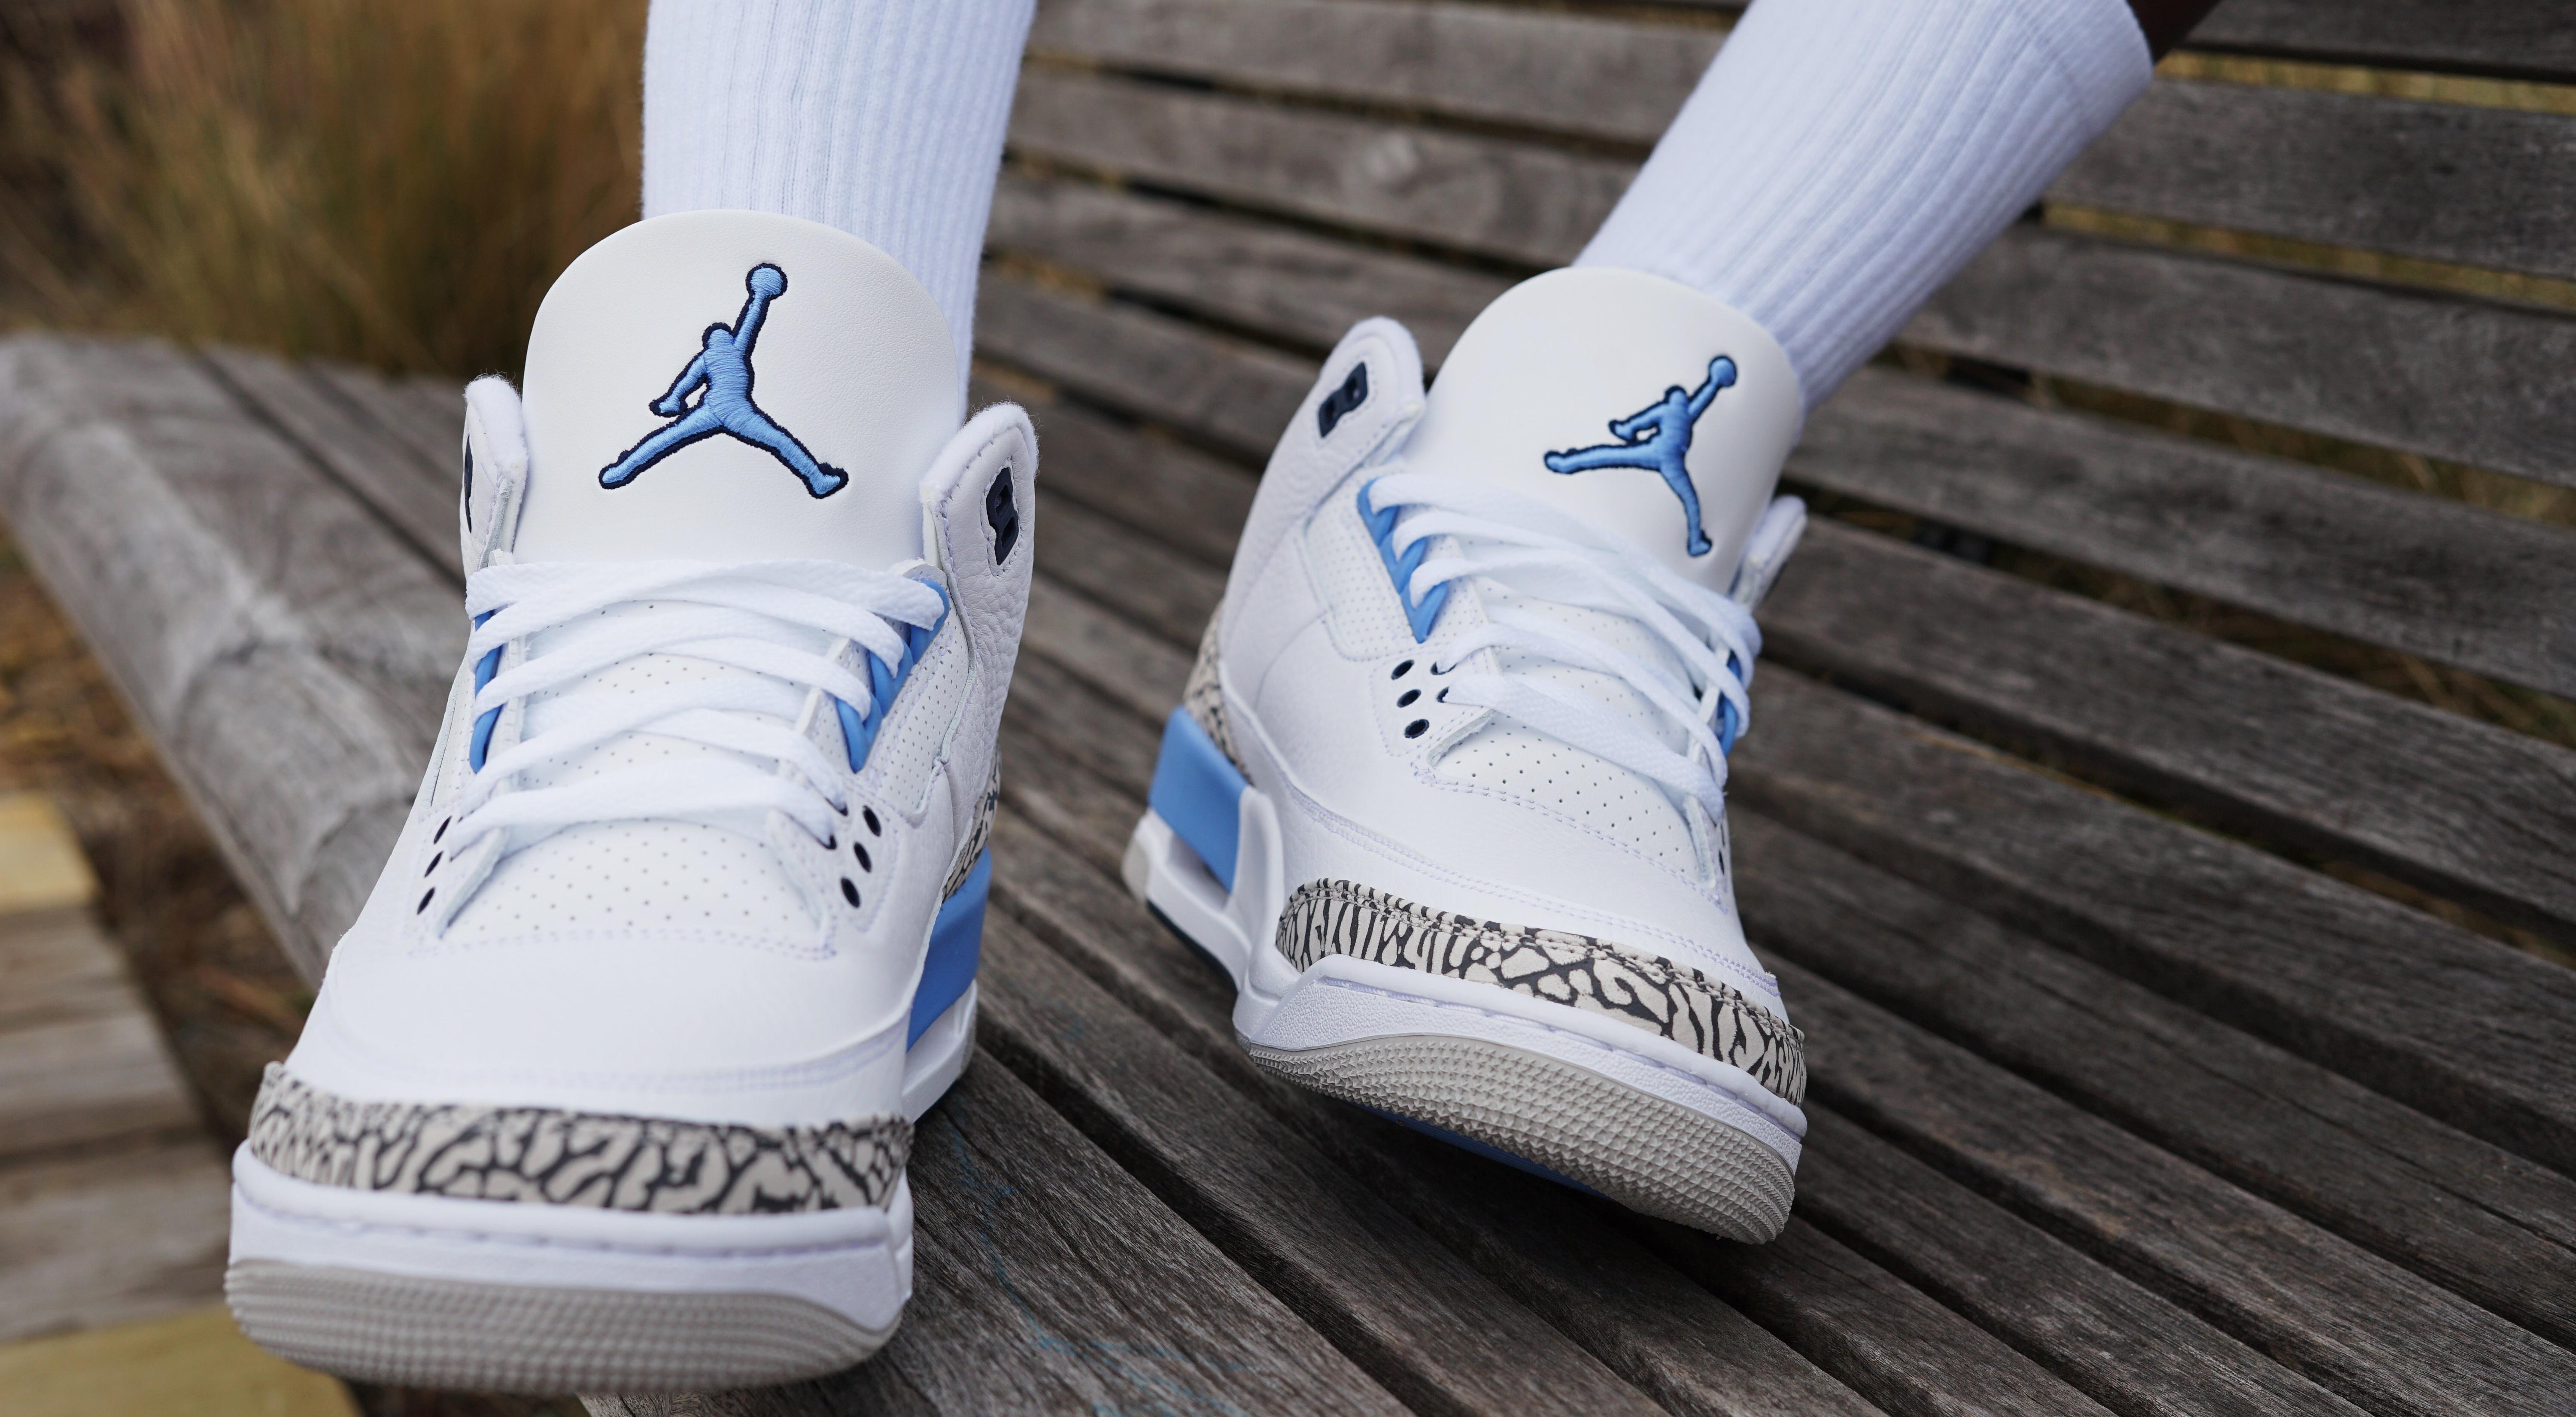 Sneakers Release Jordan 3 Retro Unc White Valor Blue Tech Grey Men S Shoe